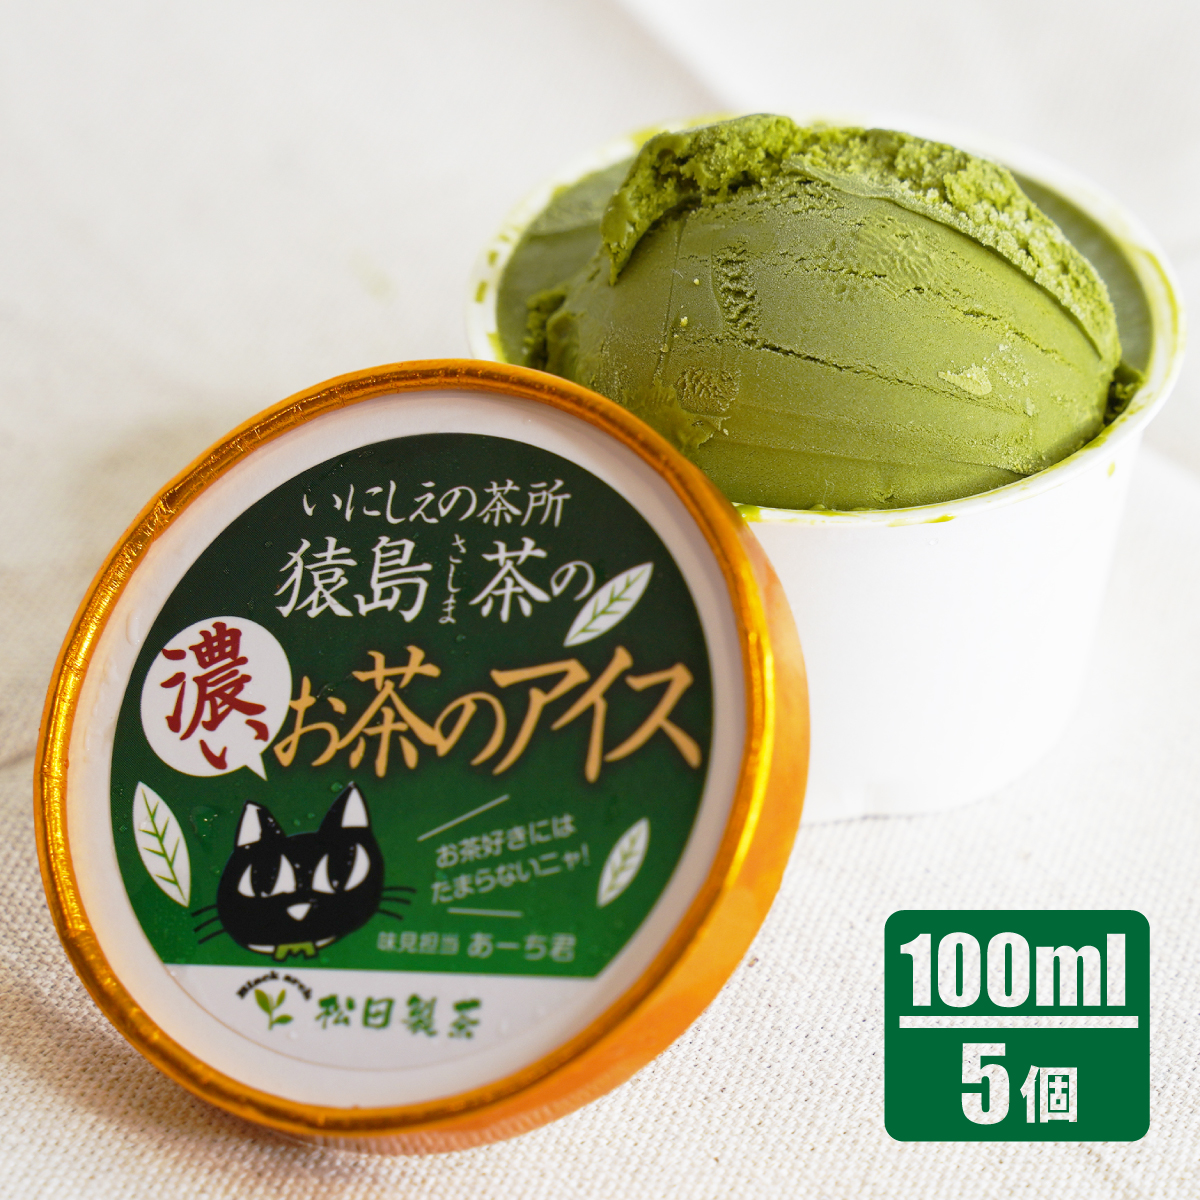 猿島茶の濃いお茶のアイス/100ml(5個)